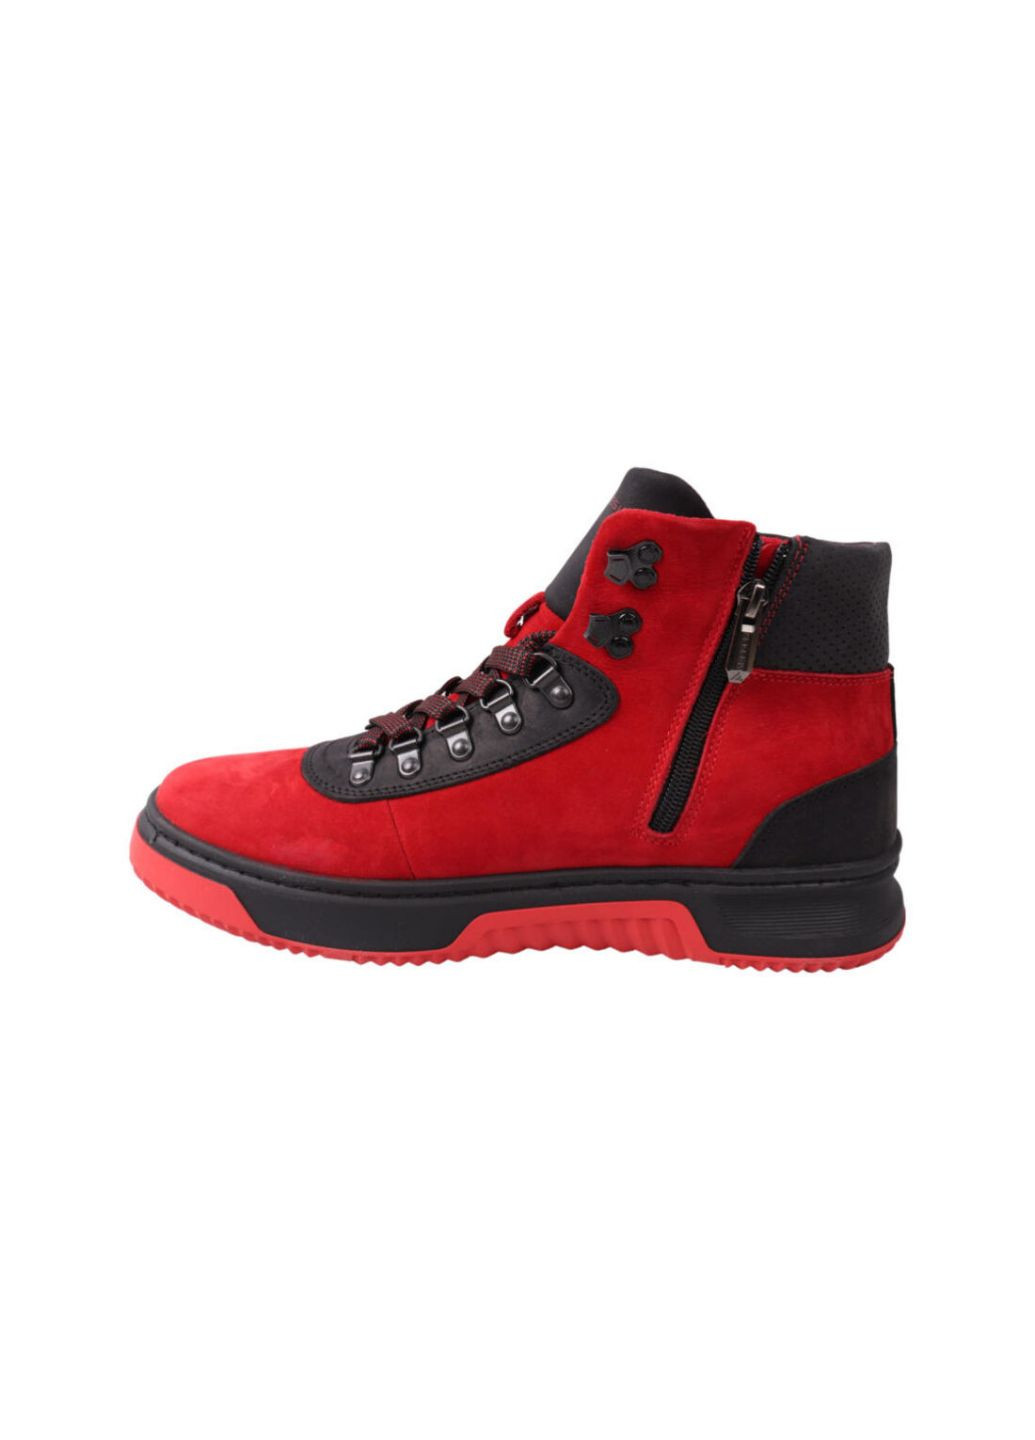 Красные ботинки мужские красные нубук Konors